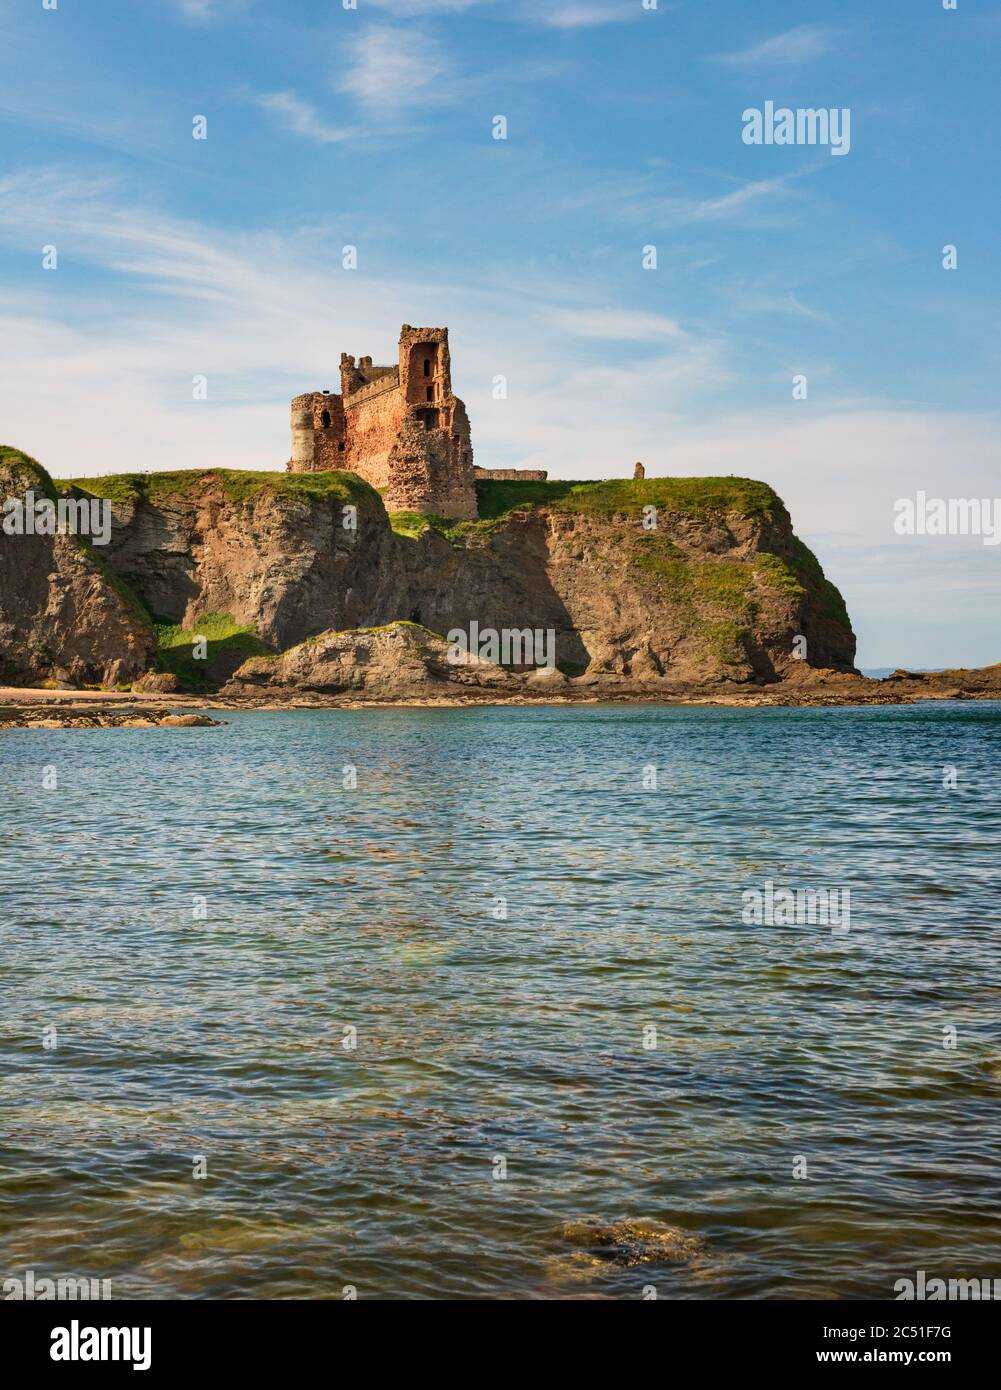 Haut sur une falaise surplombant le Firth of Forth et la côte est du Lothian Château de Tantallon de Seacliff près de North Berwick, Écosse Banque D'Images